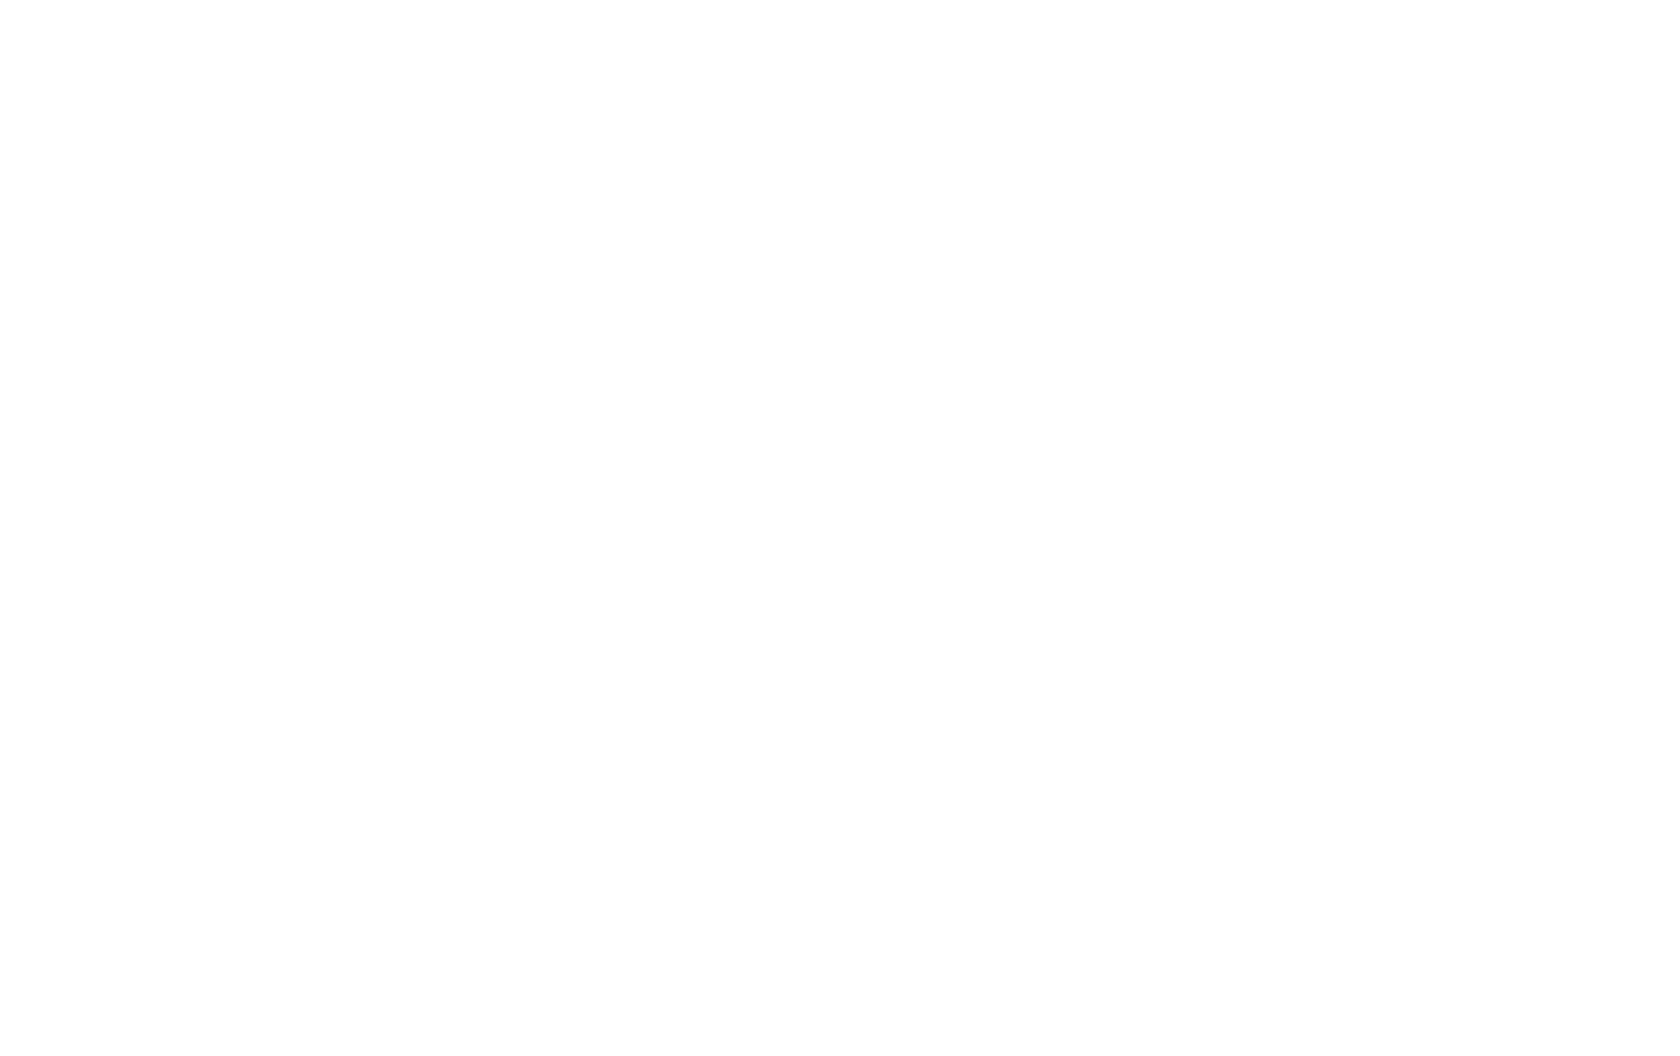 Торцевая заглушка Flexy TOREC GIPS KONTUR 01 для профилей Flexy: размер, вид, применение, способ монтажа в Москве, СПБ и России